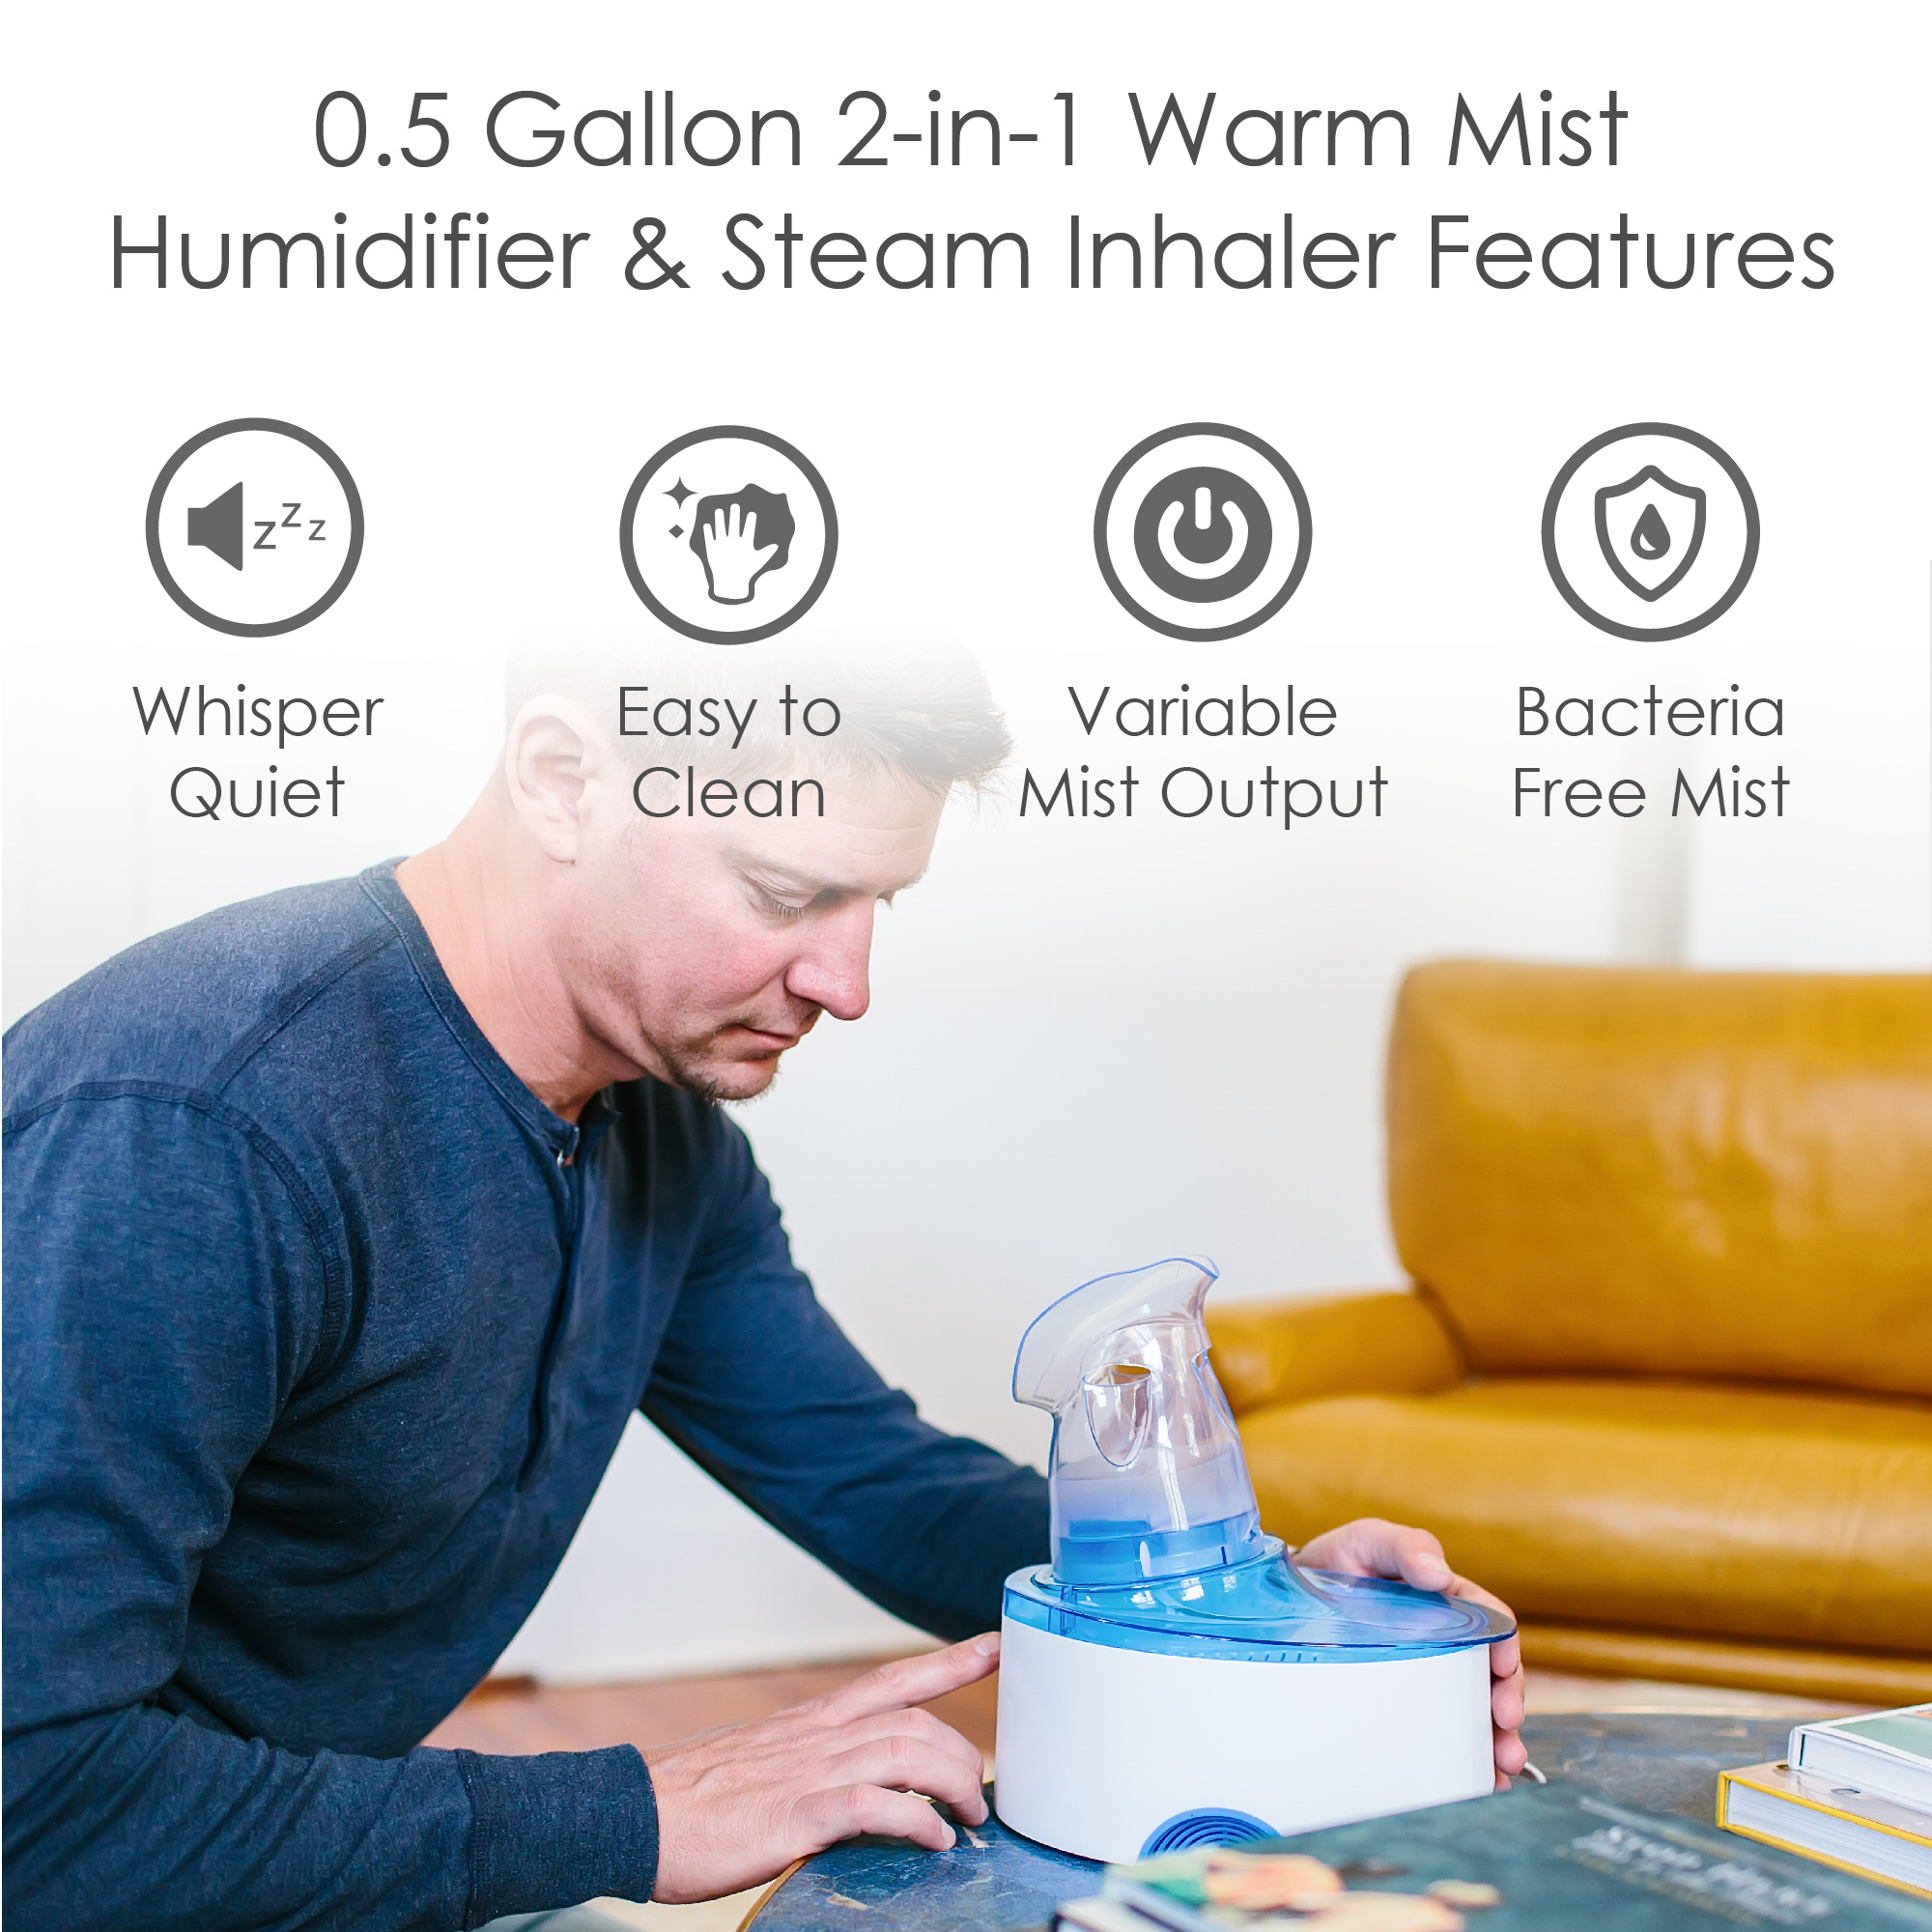 2-in-1 Warm Mist Humidifier & Steam Inhaler